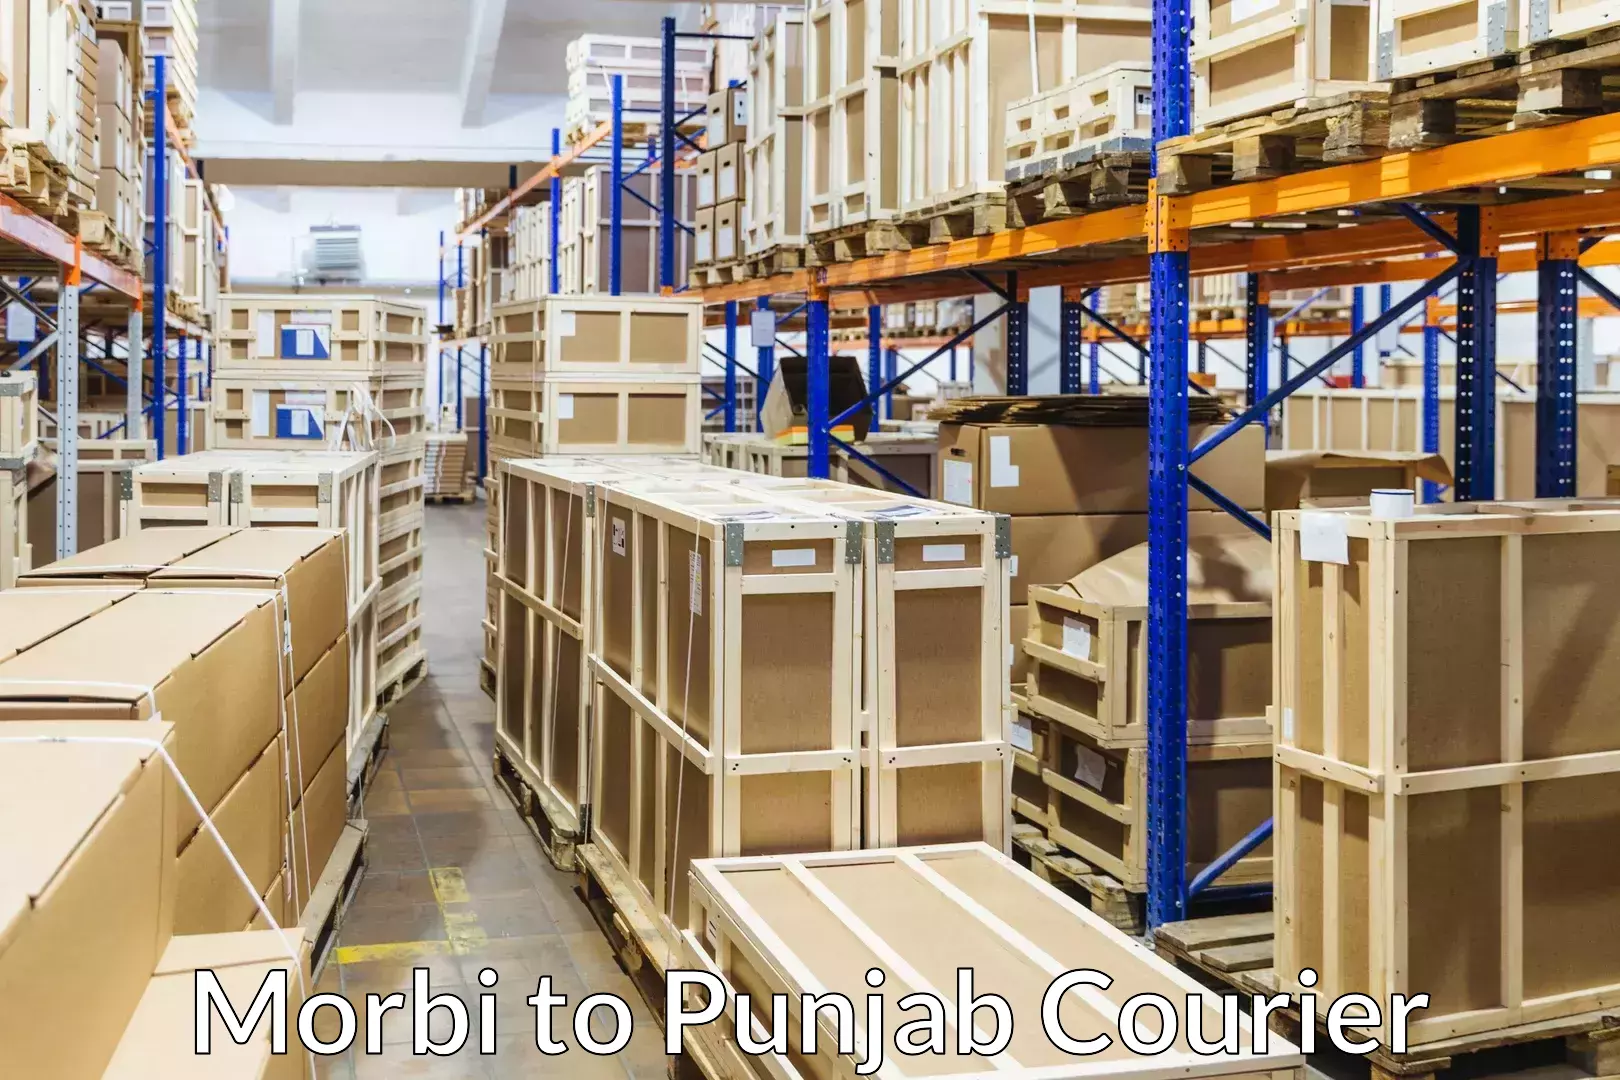 Household moving experts Morbi to Punjab